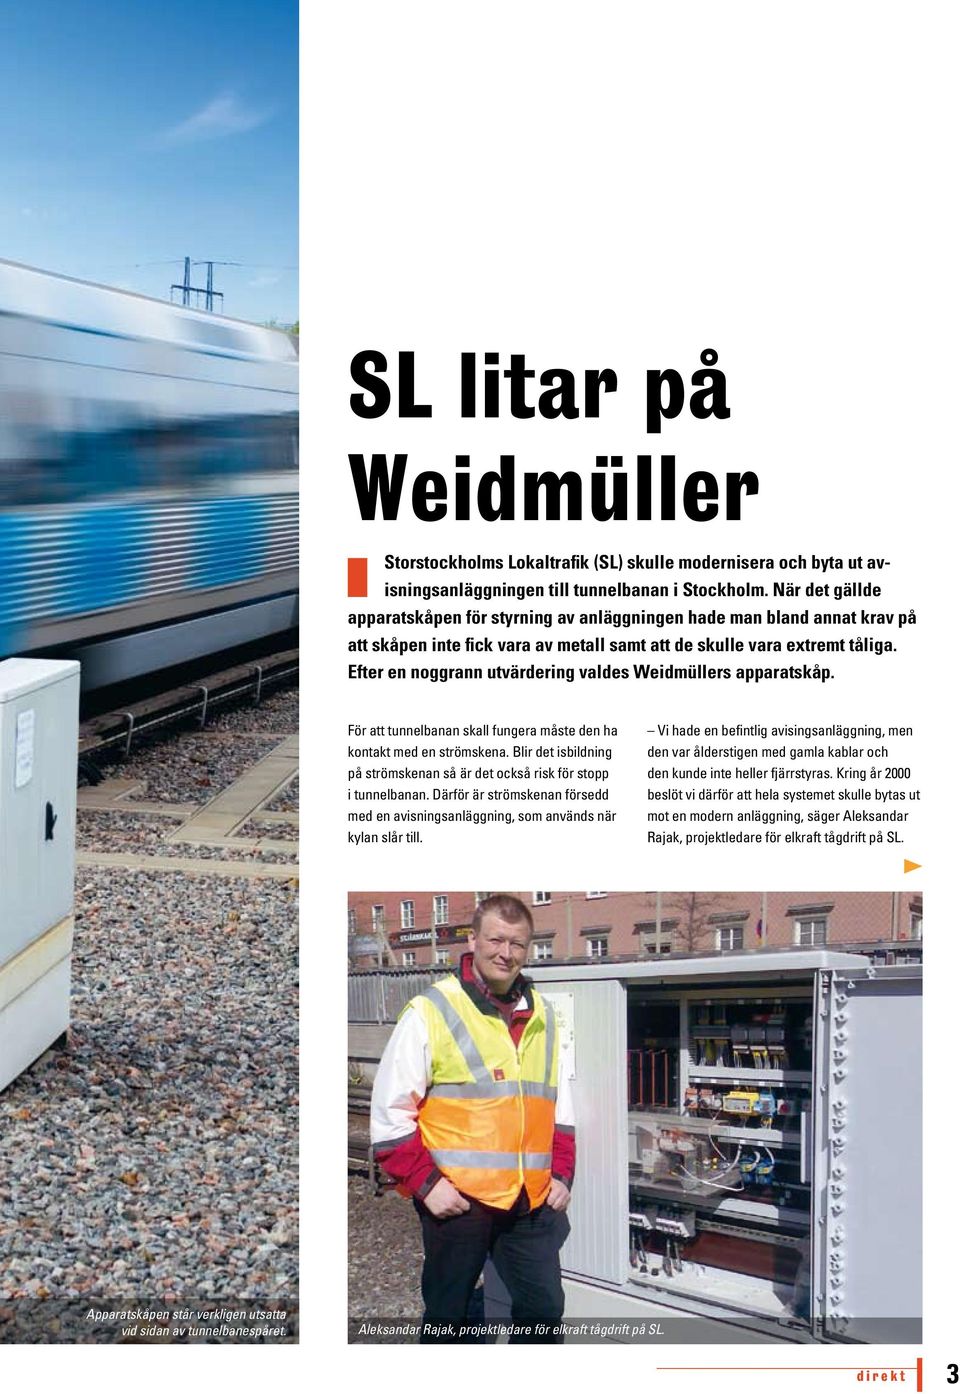 Efter en noggrann utvärdering valdes Weidmüllers apparatskåp. För att tunnelbanan skall fungera måste den ha kontakt med en strömskena.